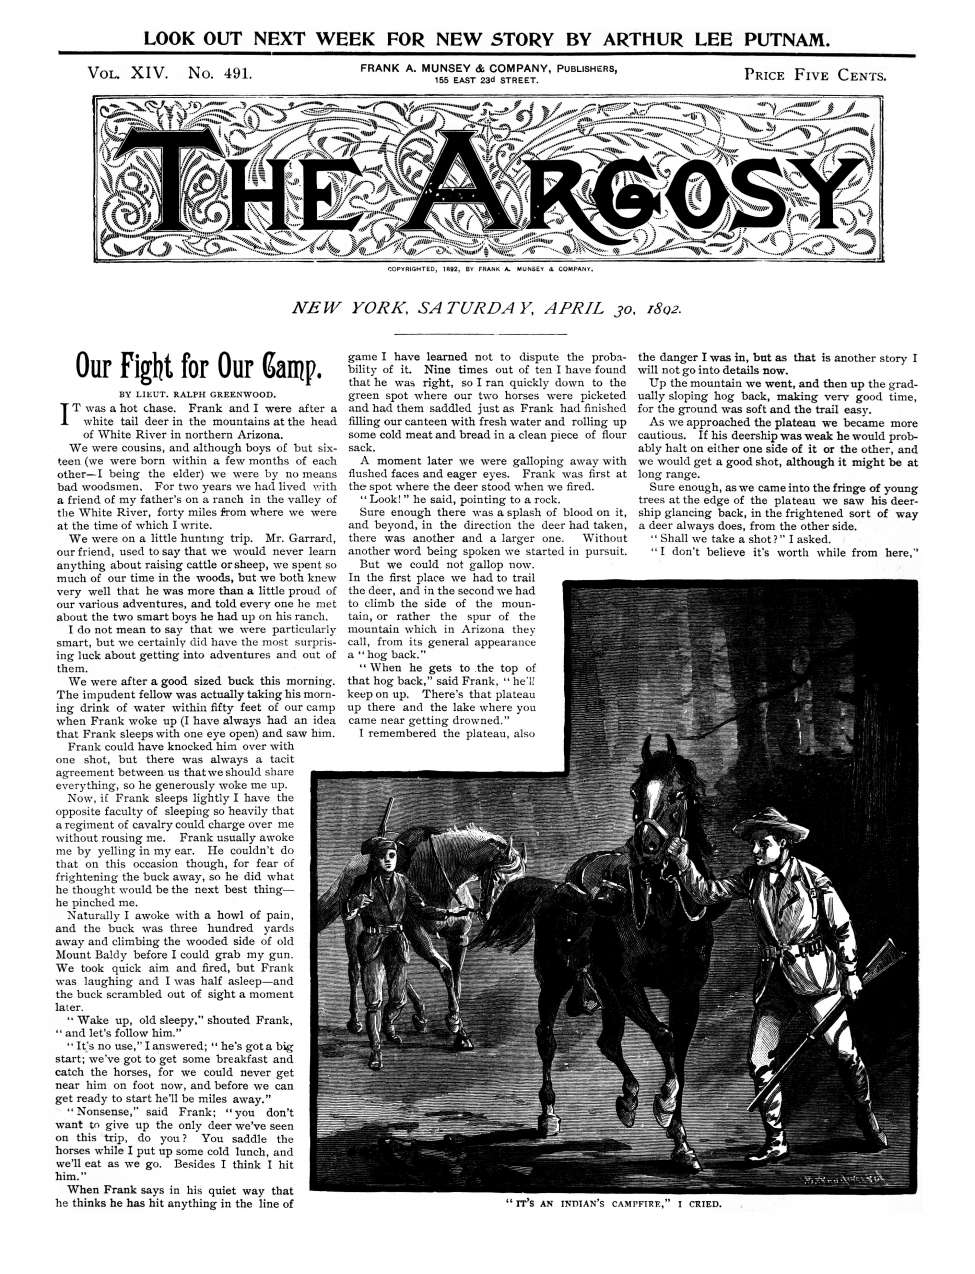 Book Cover For The Argosy v14 491